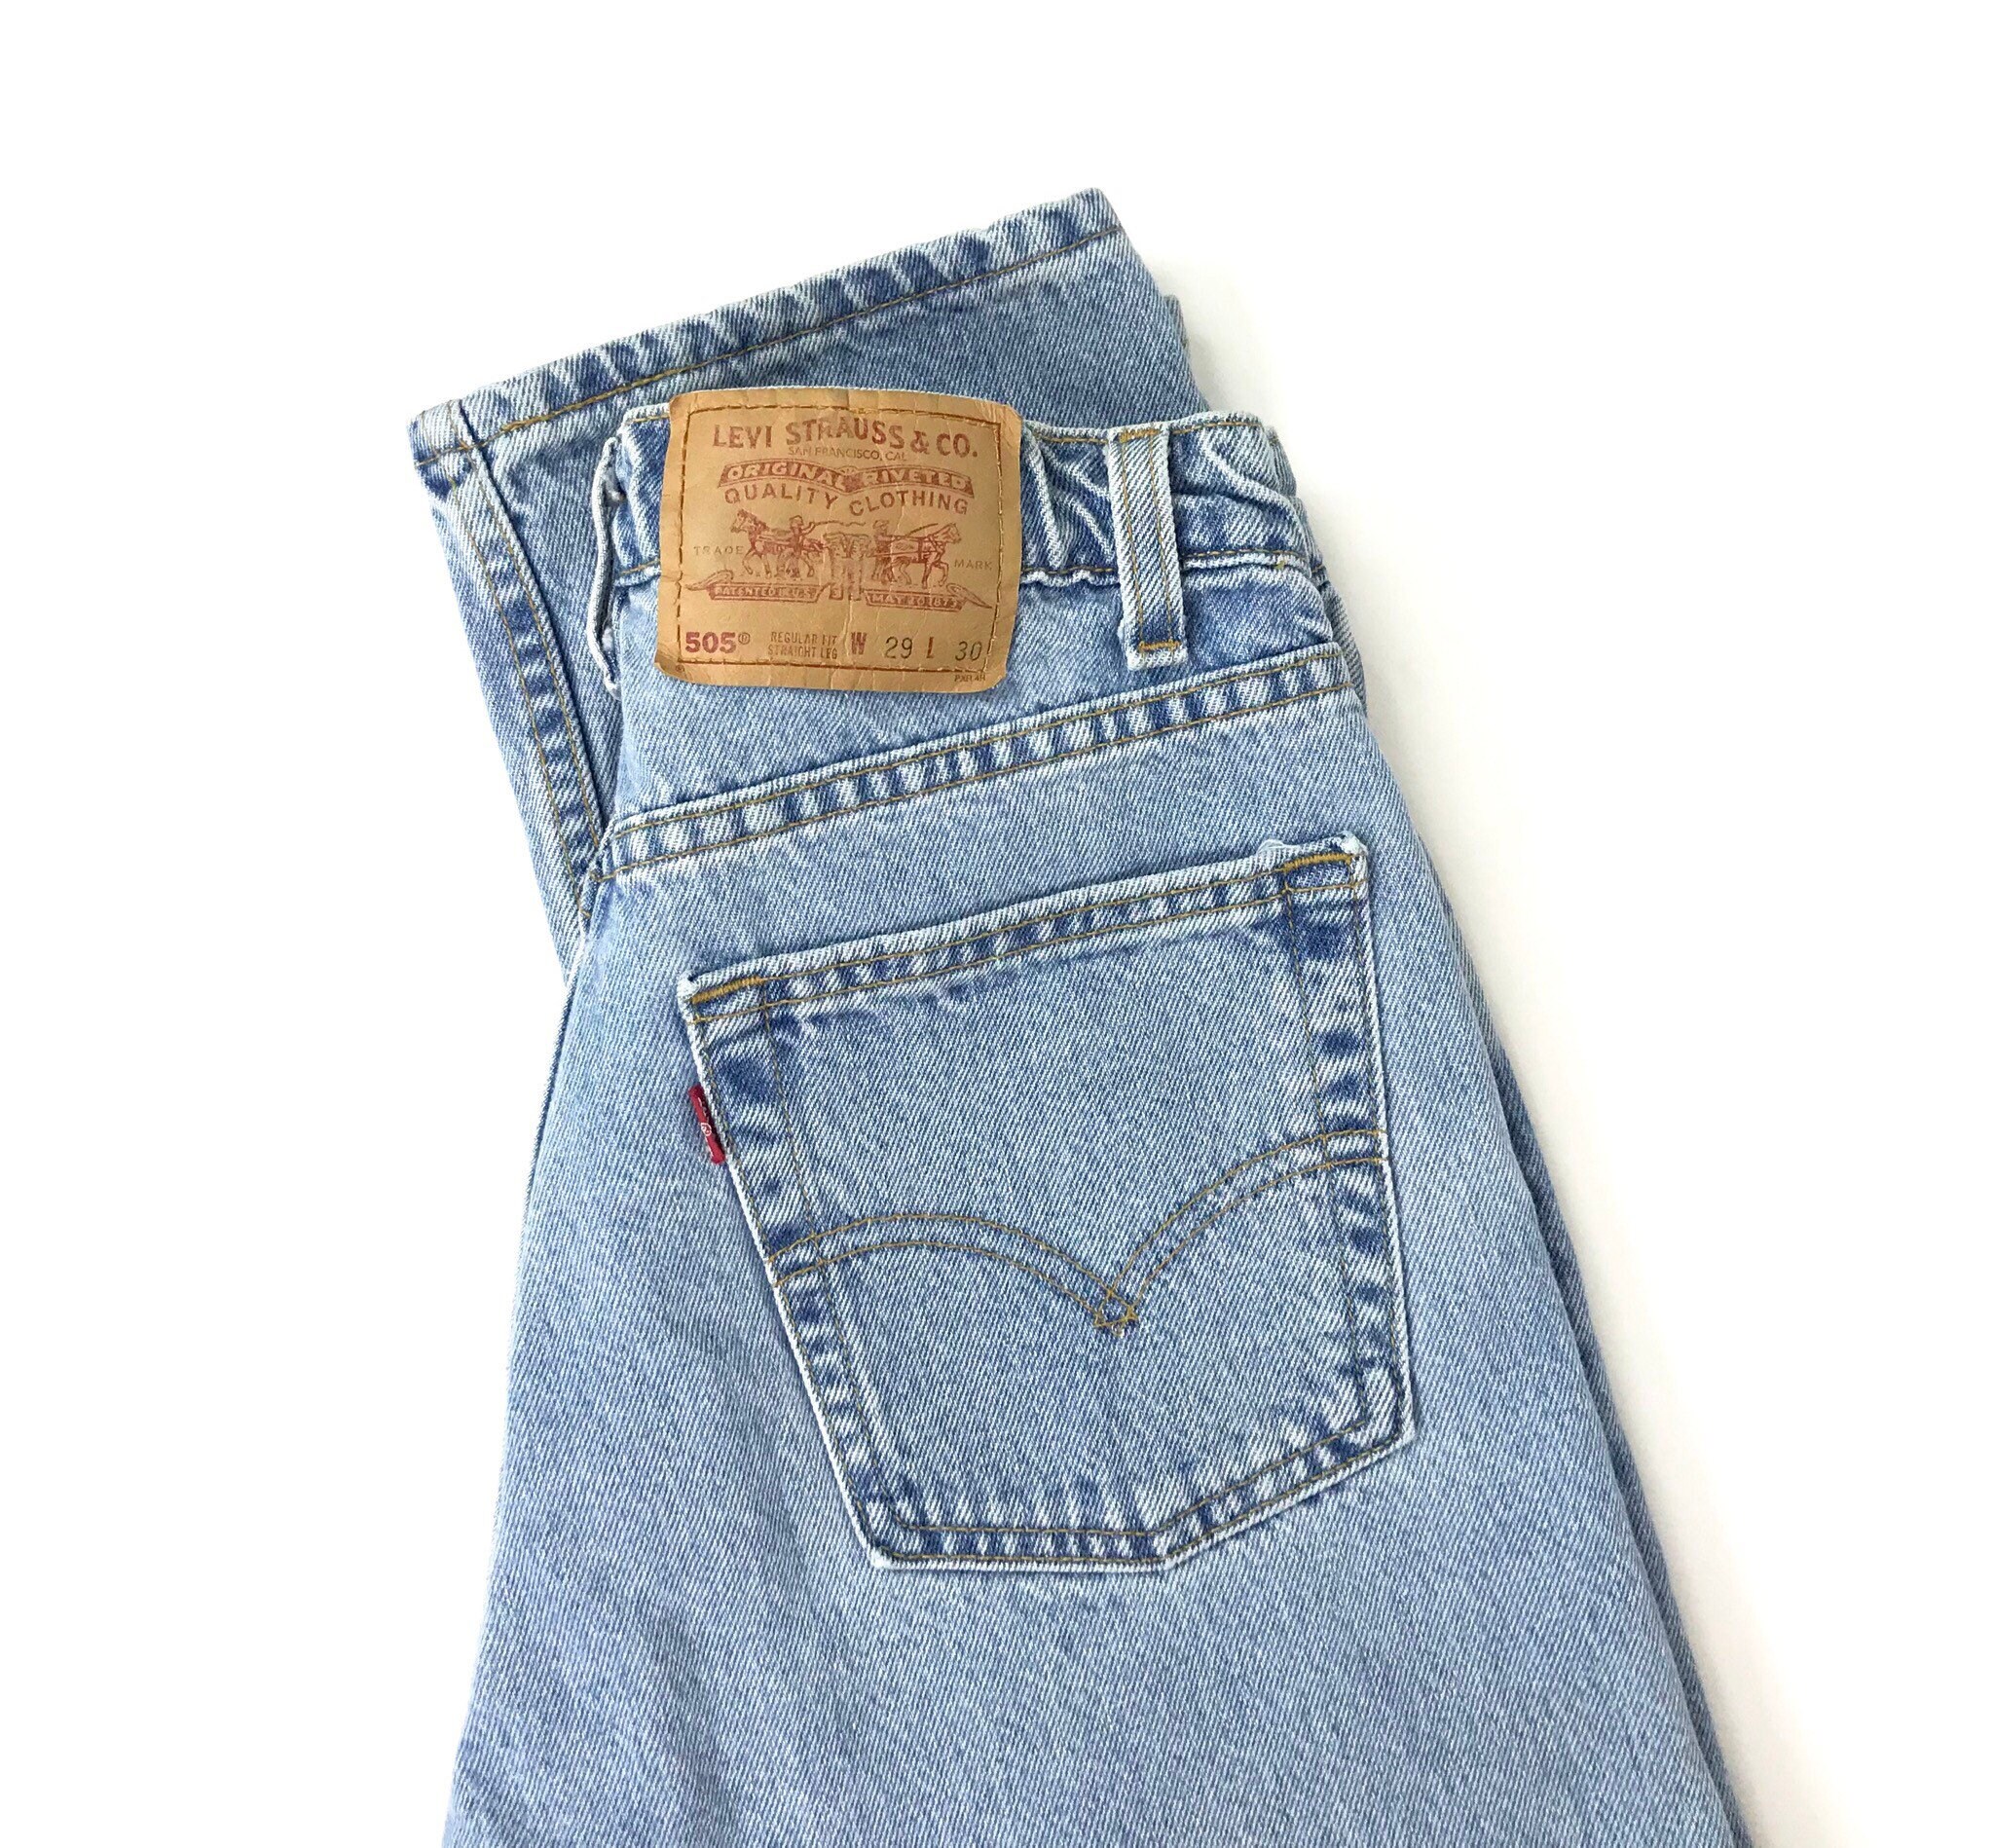 Levi's 505 Vintage Jeans / Size 27